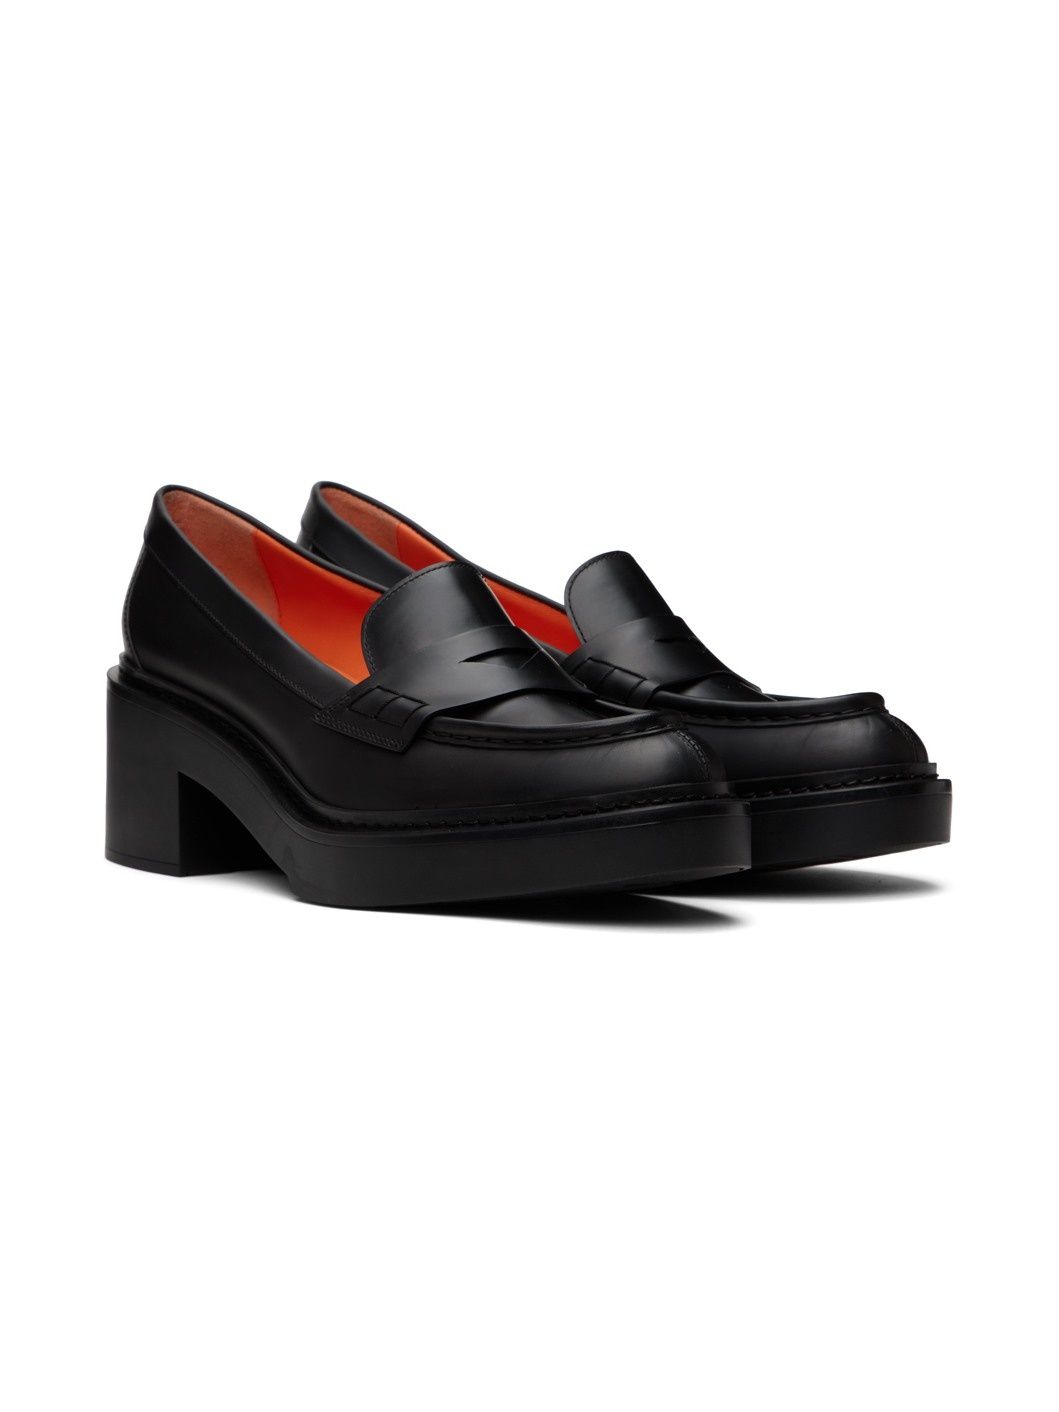 Black Loafer Heels - 4